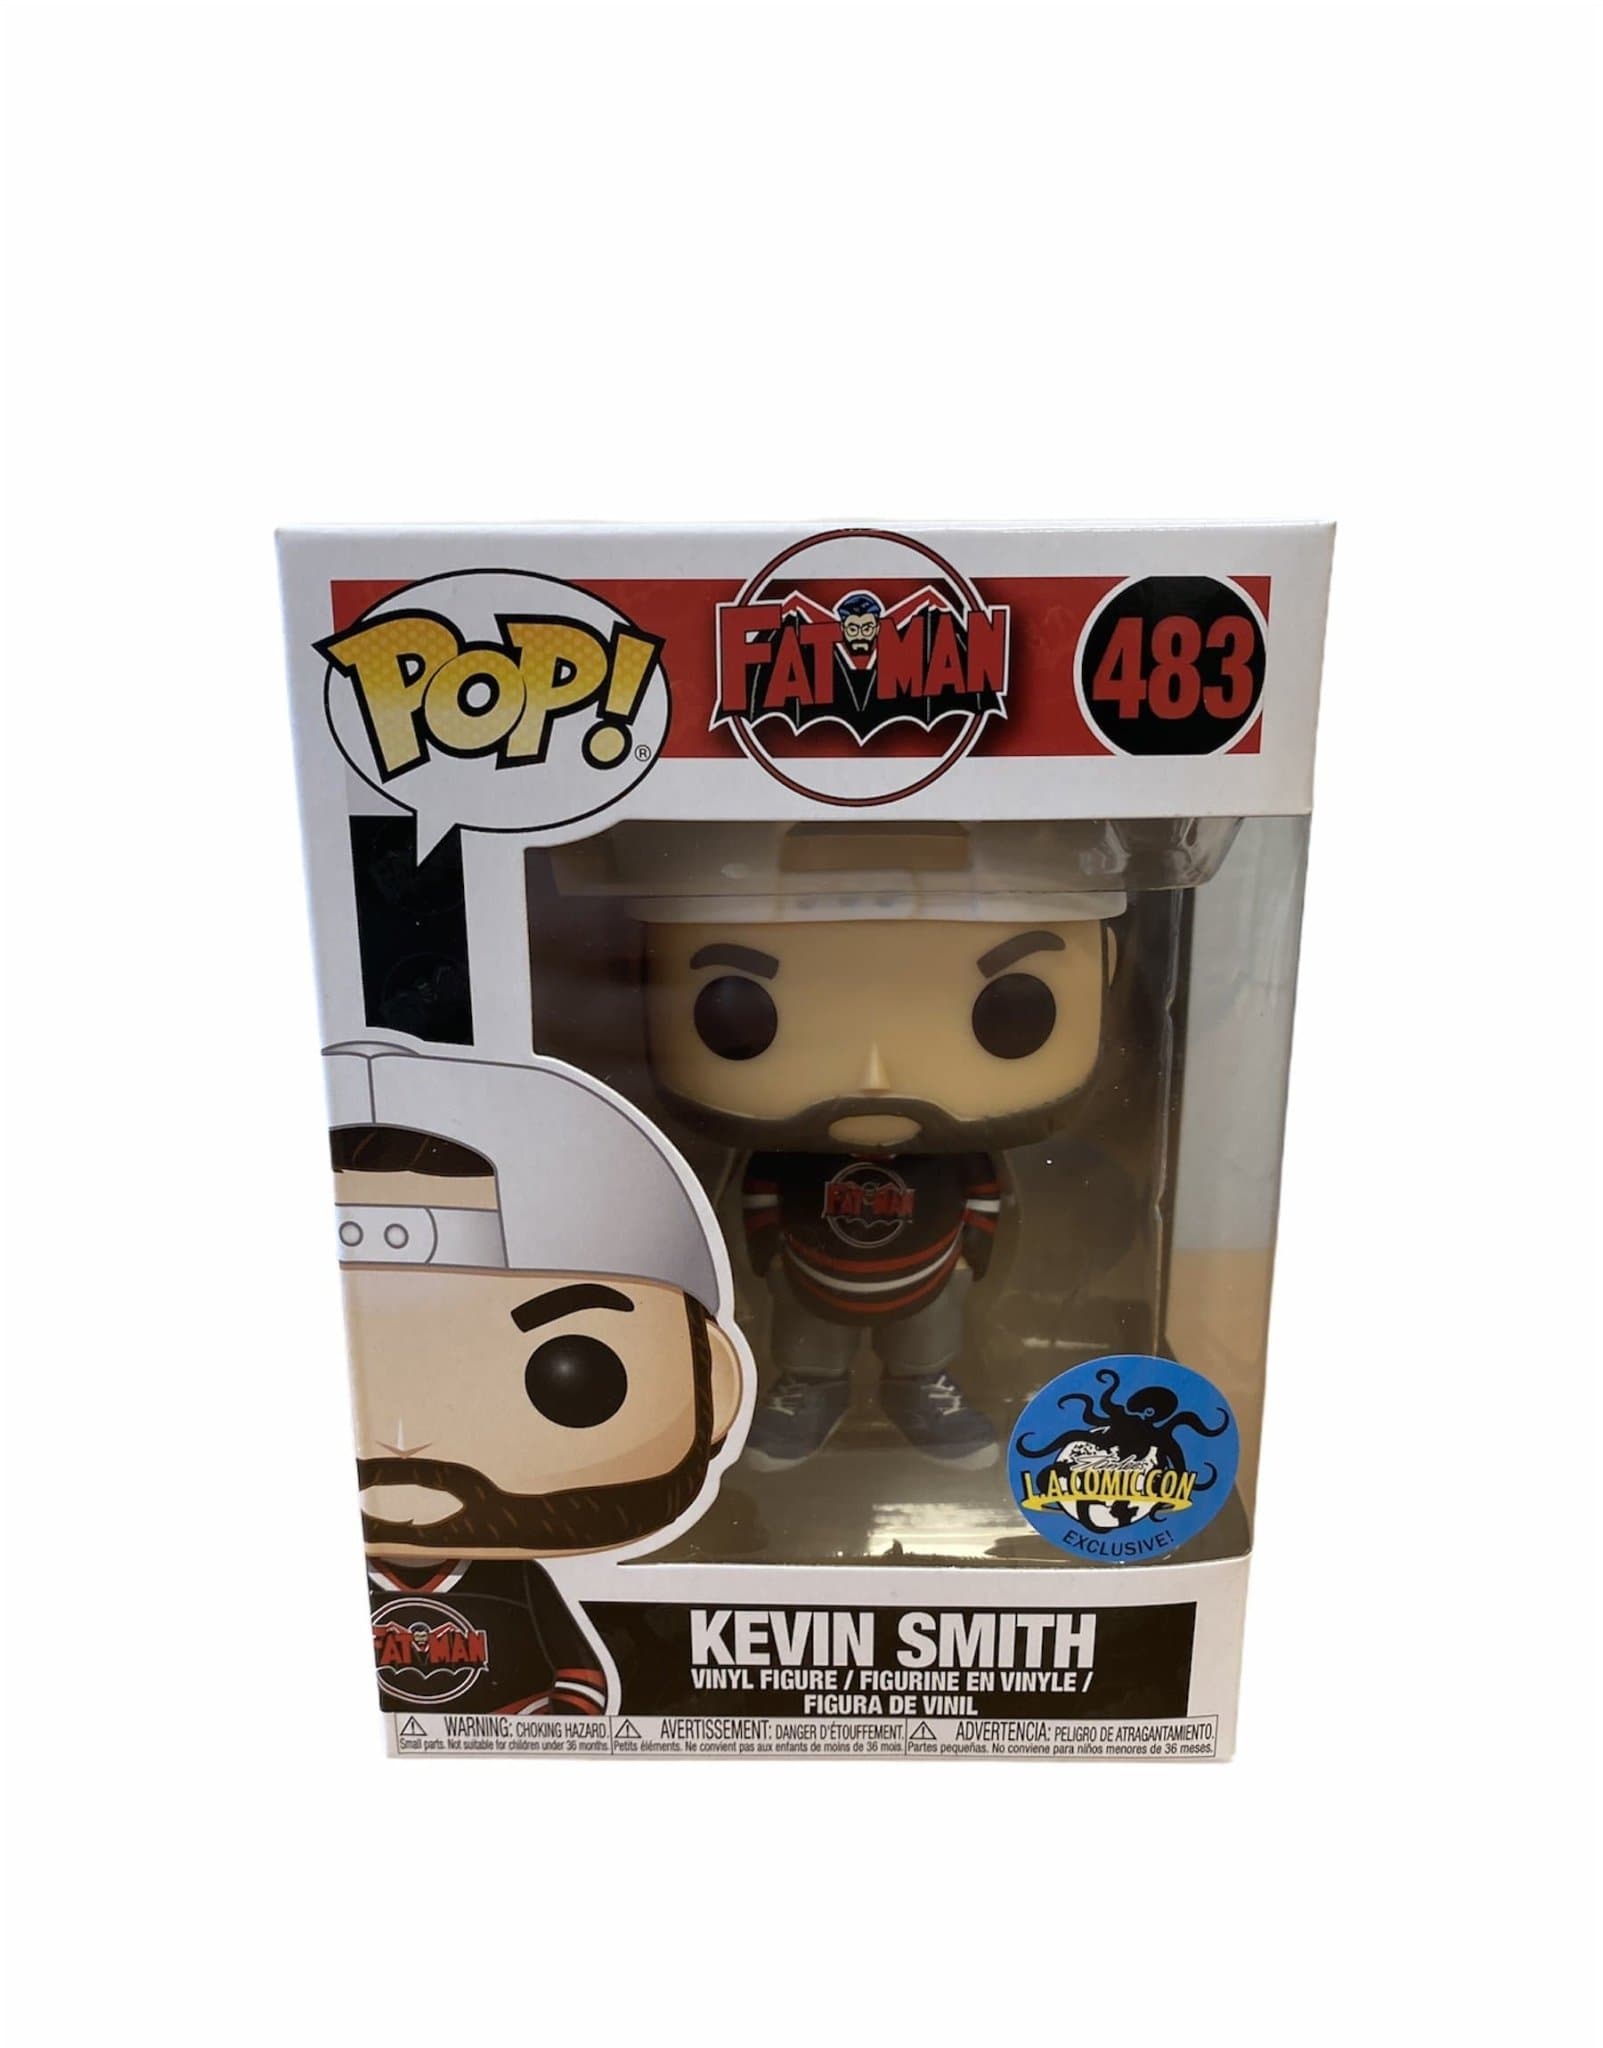 Kevin Smith #483 Funko Pop! Fat Man. LA Comic Con Exclusive. Condition 9/10 - Pop Figures